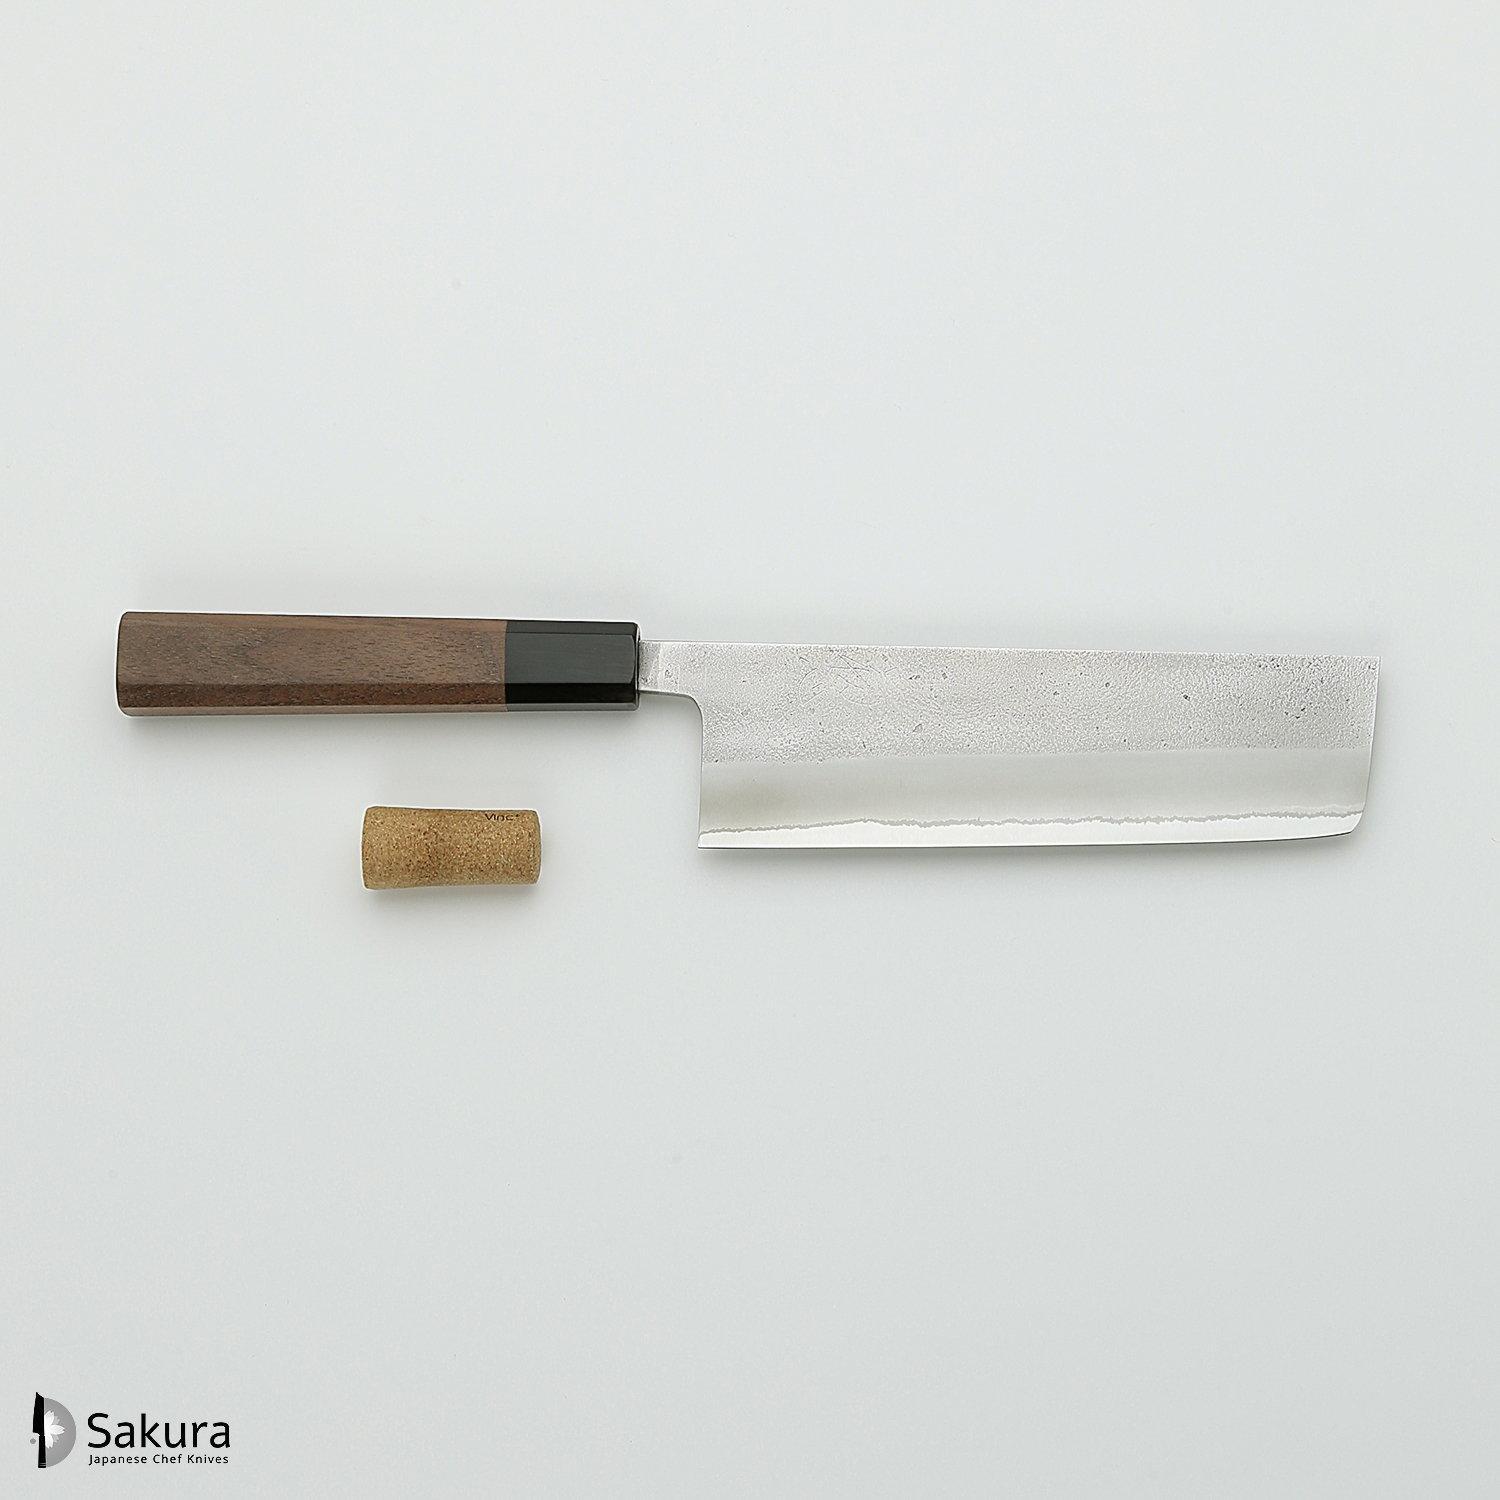 סכין ירקות נַקִירִי 165מ״מ מחושלת בעבודת יד 3 שכבות: פלדת פחמן יפנית מתקדמת מסוג Shirogami #2 עטופה פלדת אל-חלד גימור מט חיספוס טבעי יושיקאנה יפן